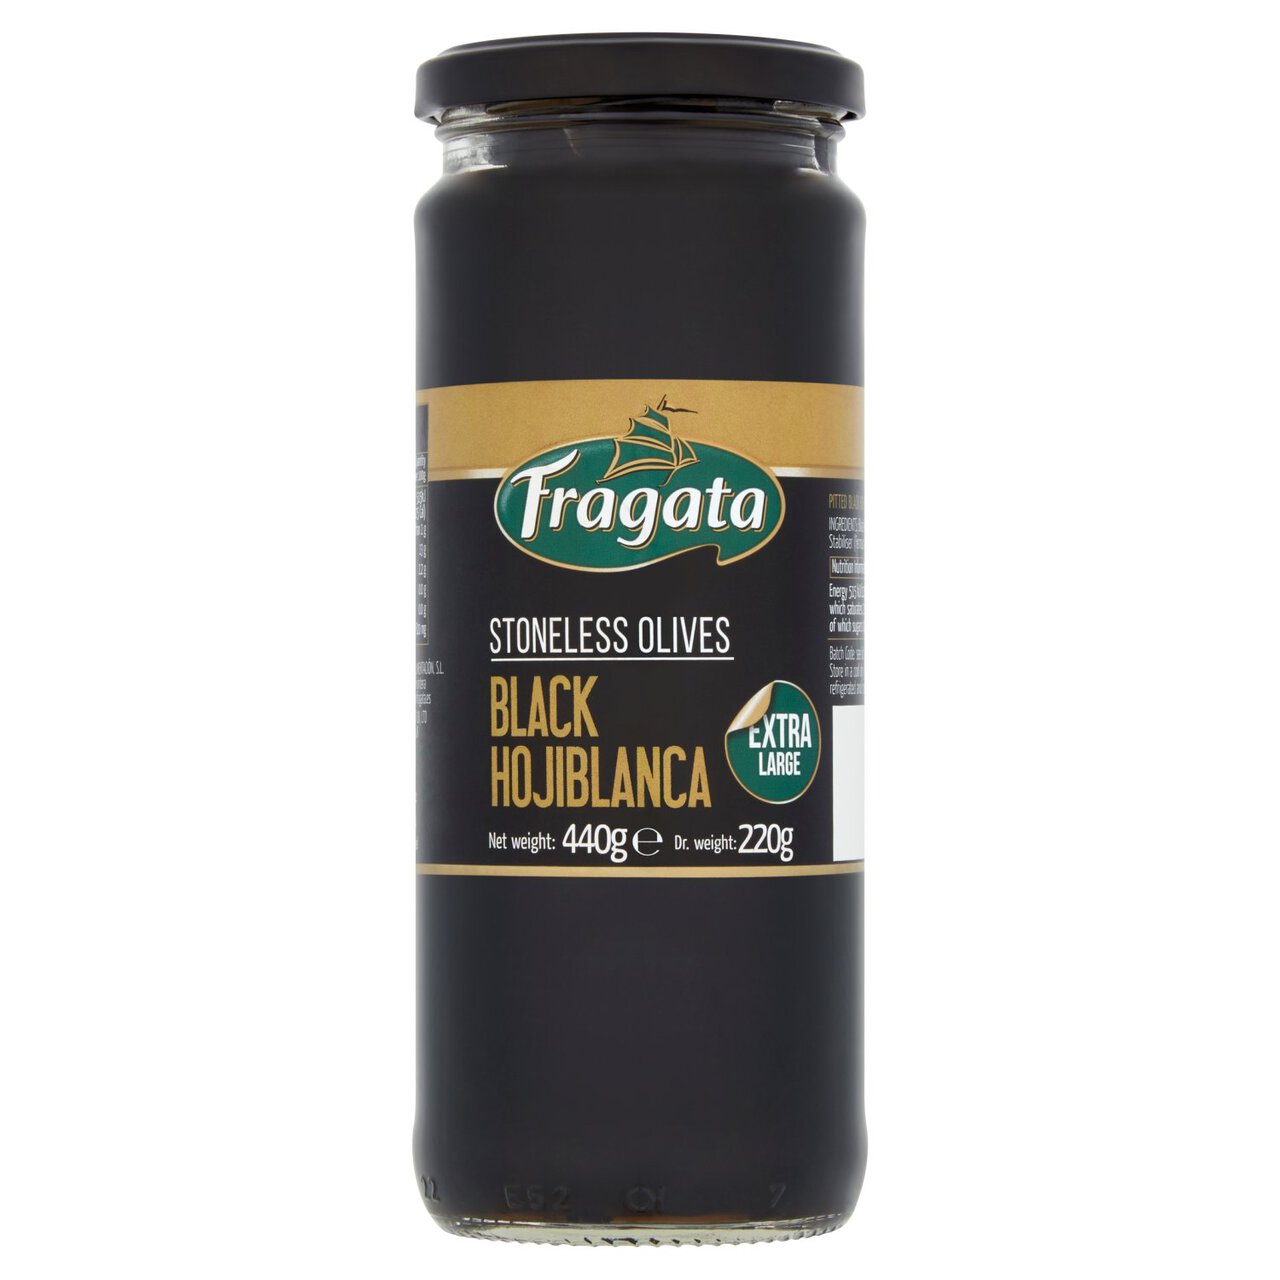 Fragata Pitted Black Olives 440g